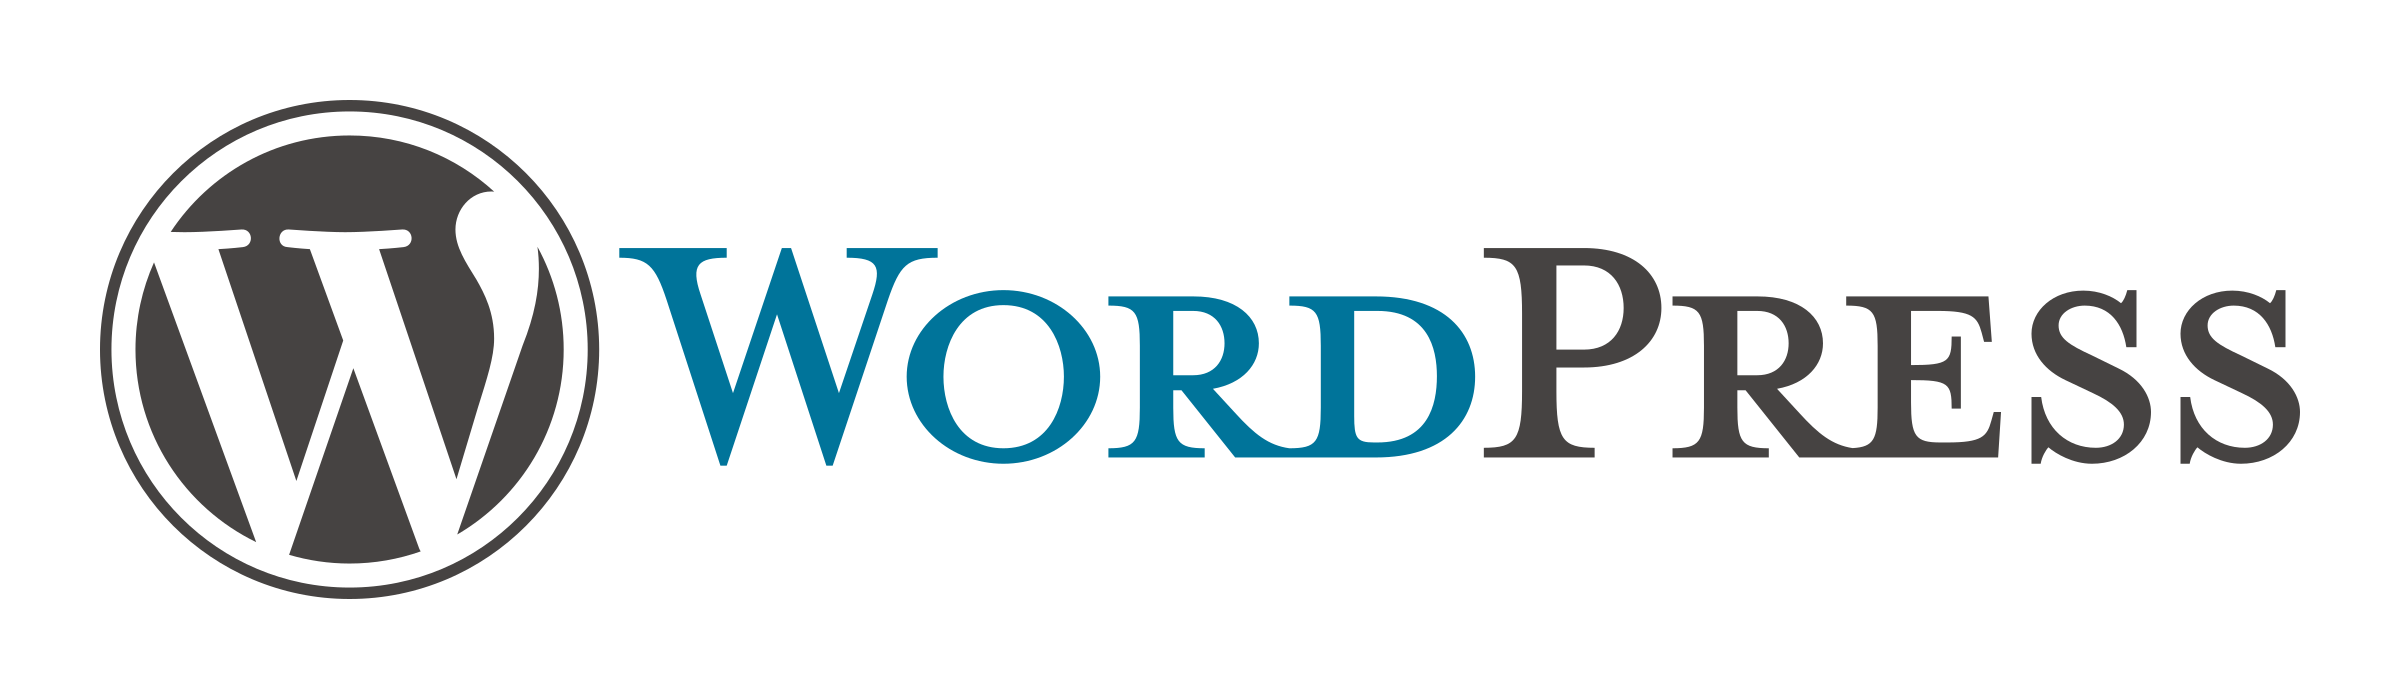 Wordpress Logo PNG - 173246